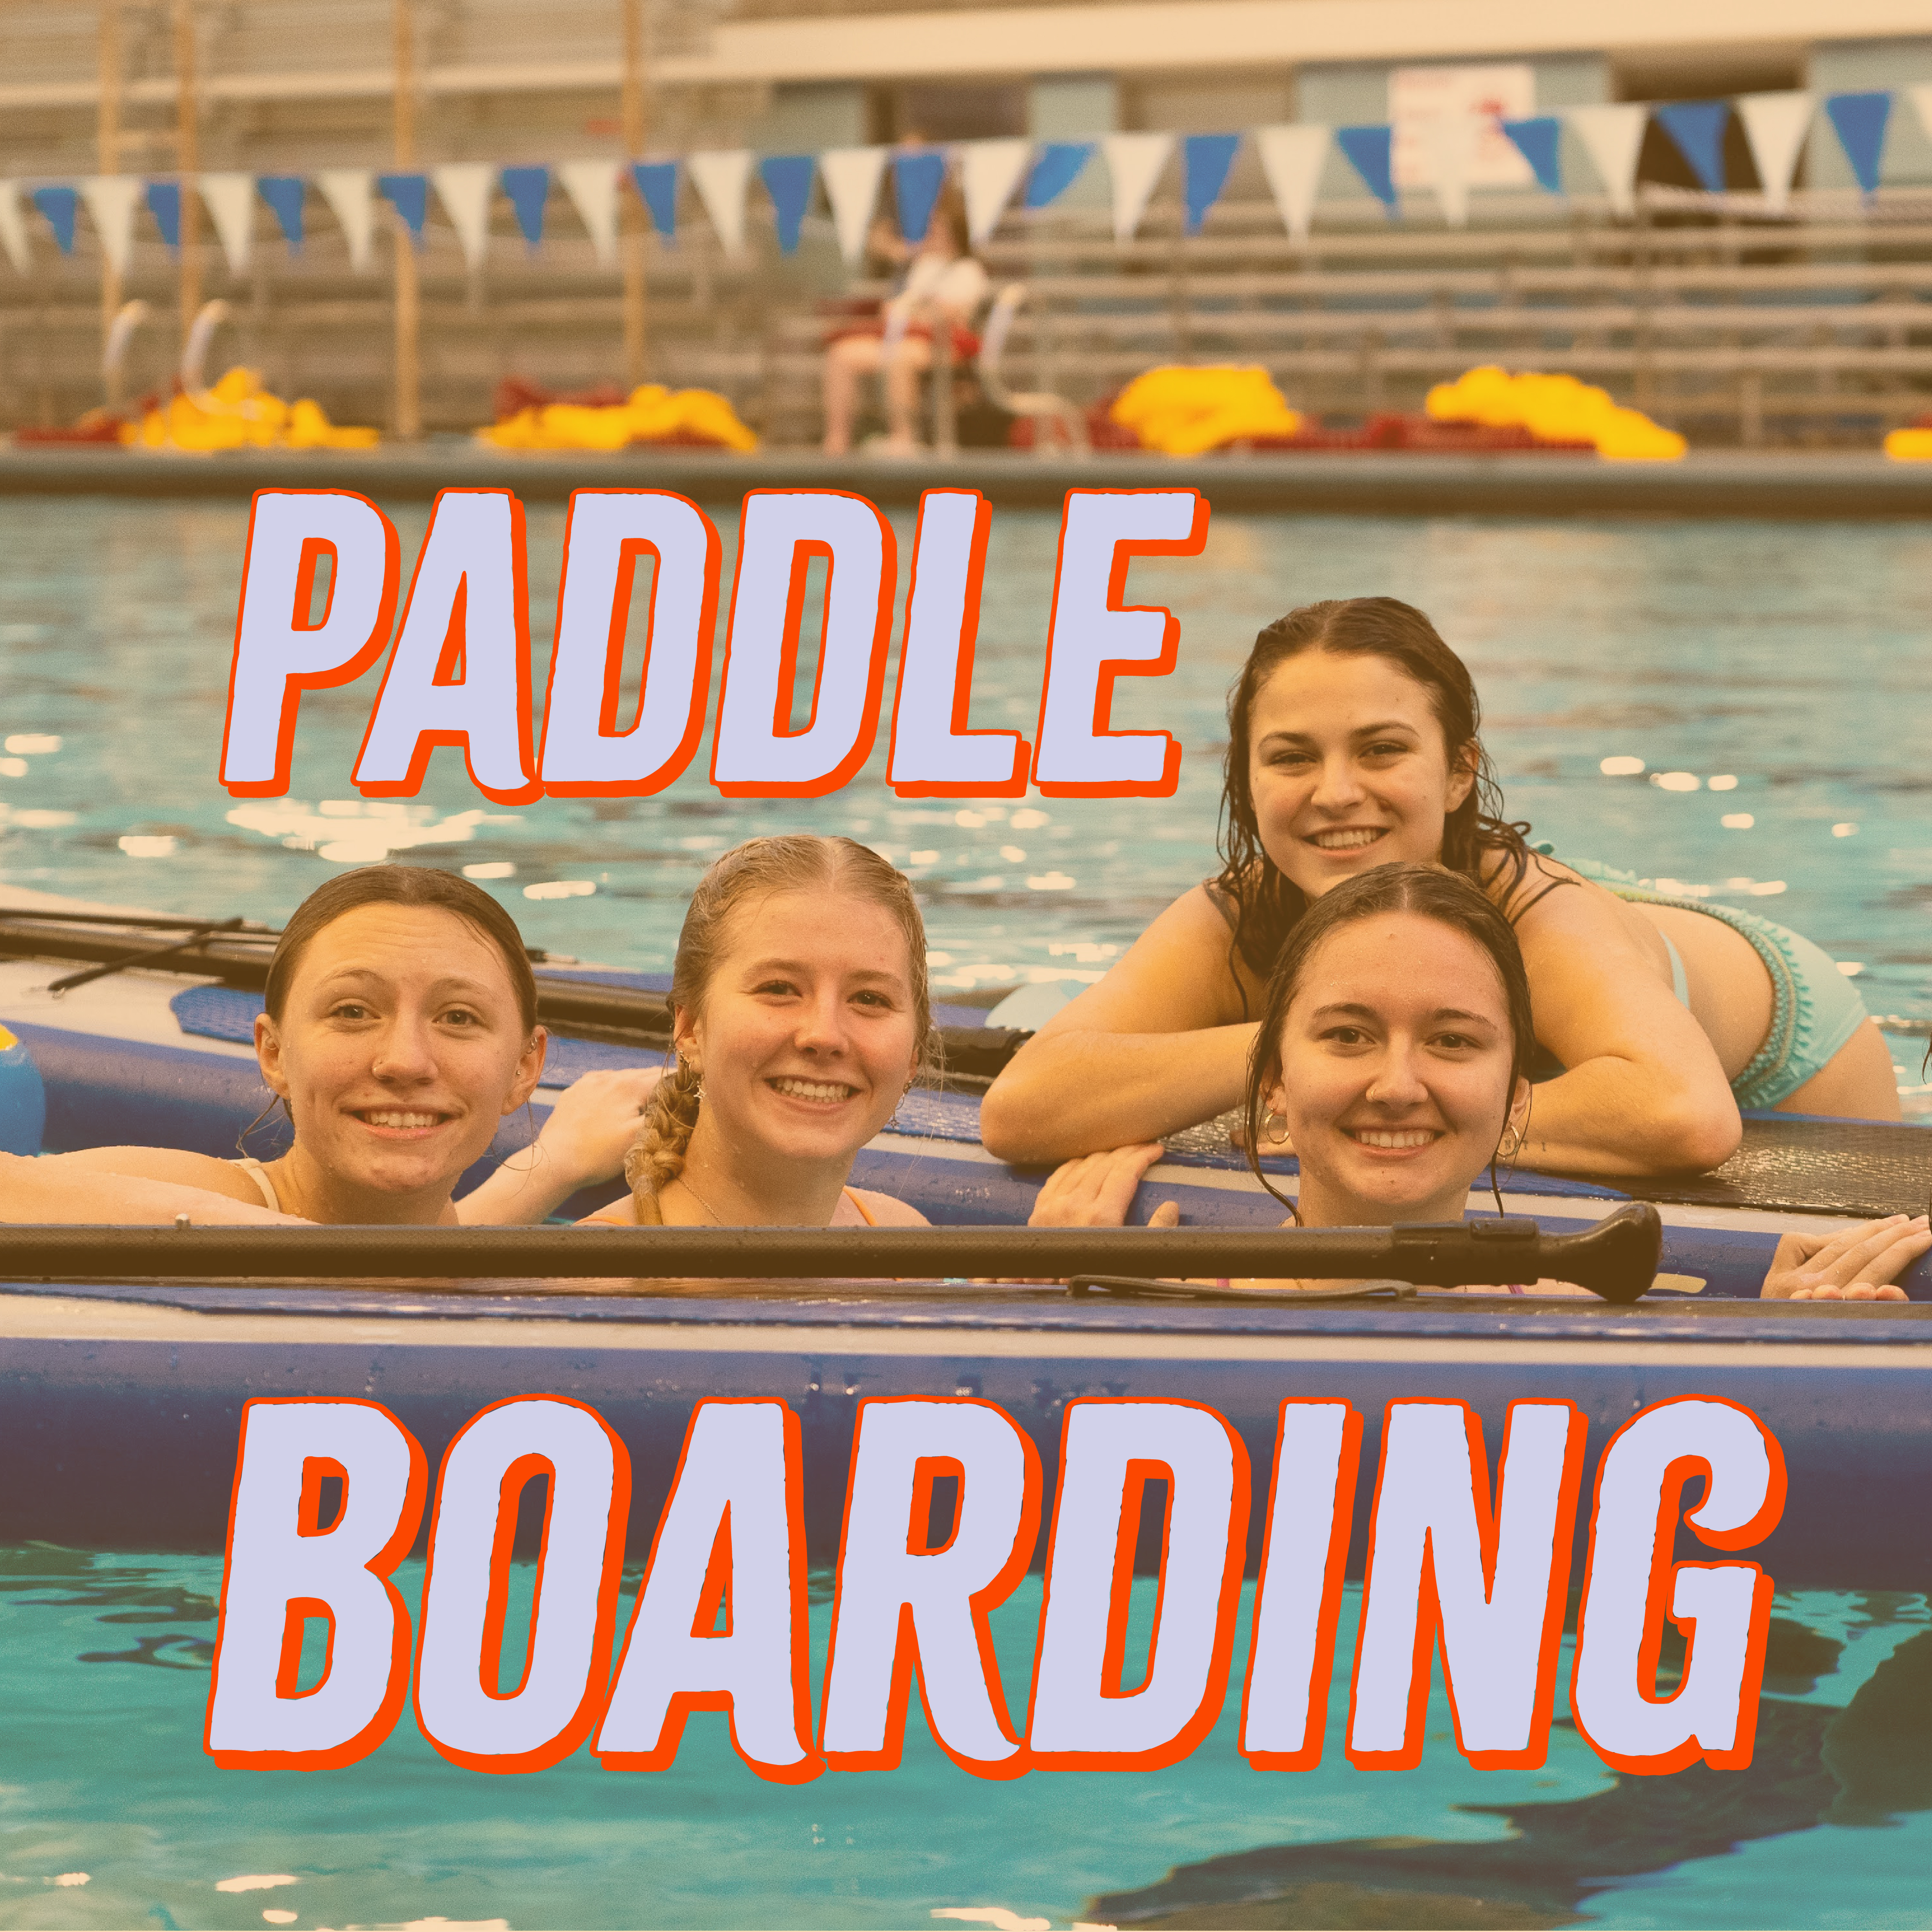 Paddle boarding photo